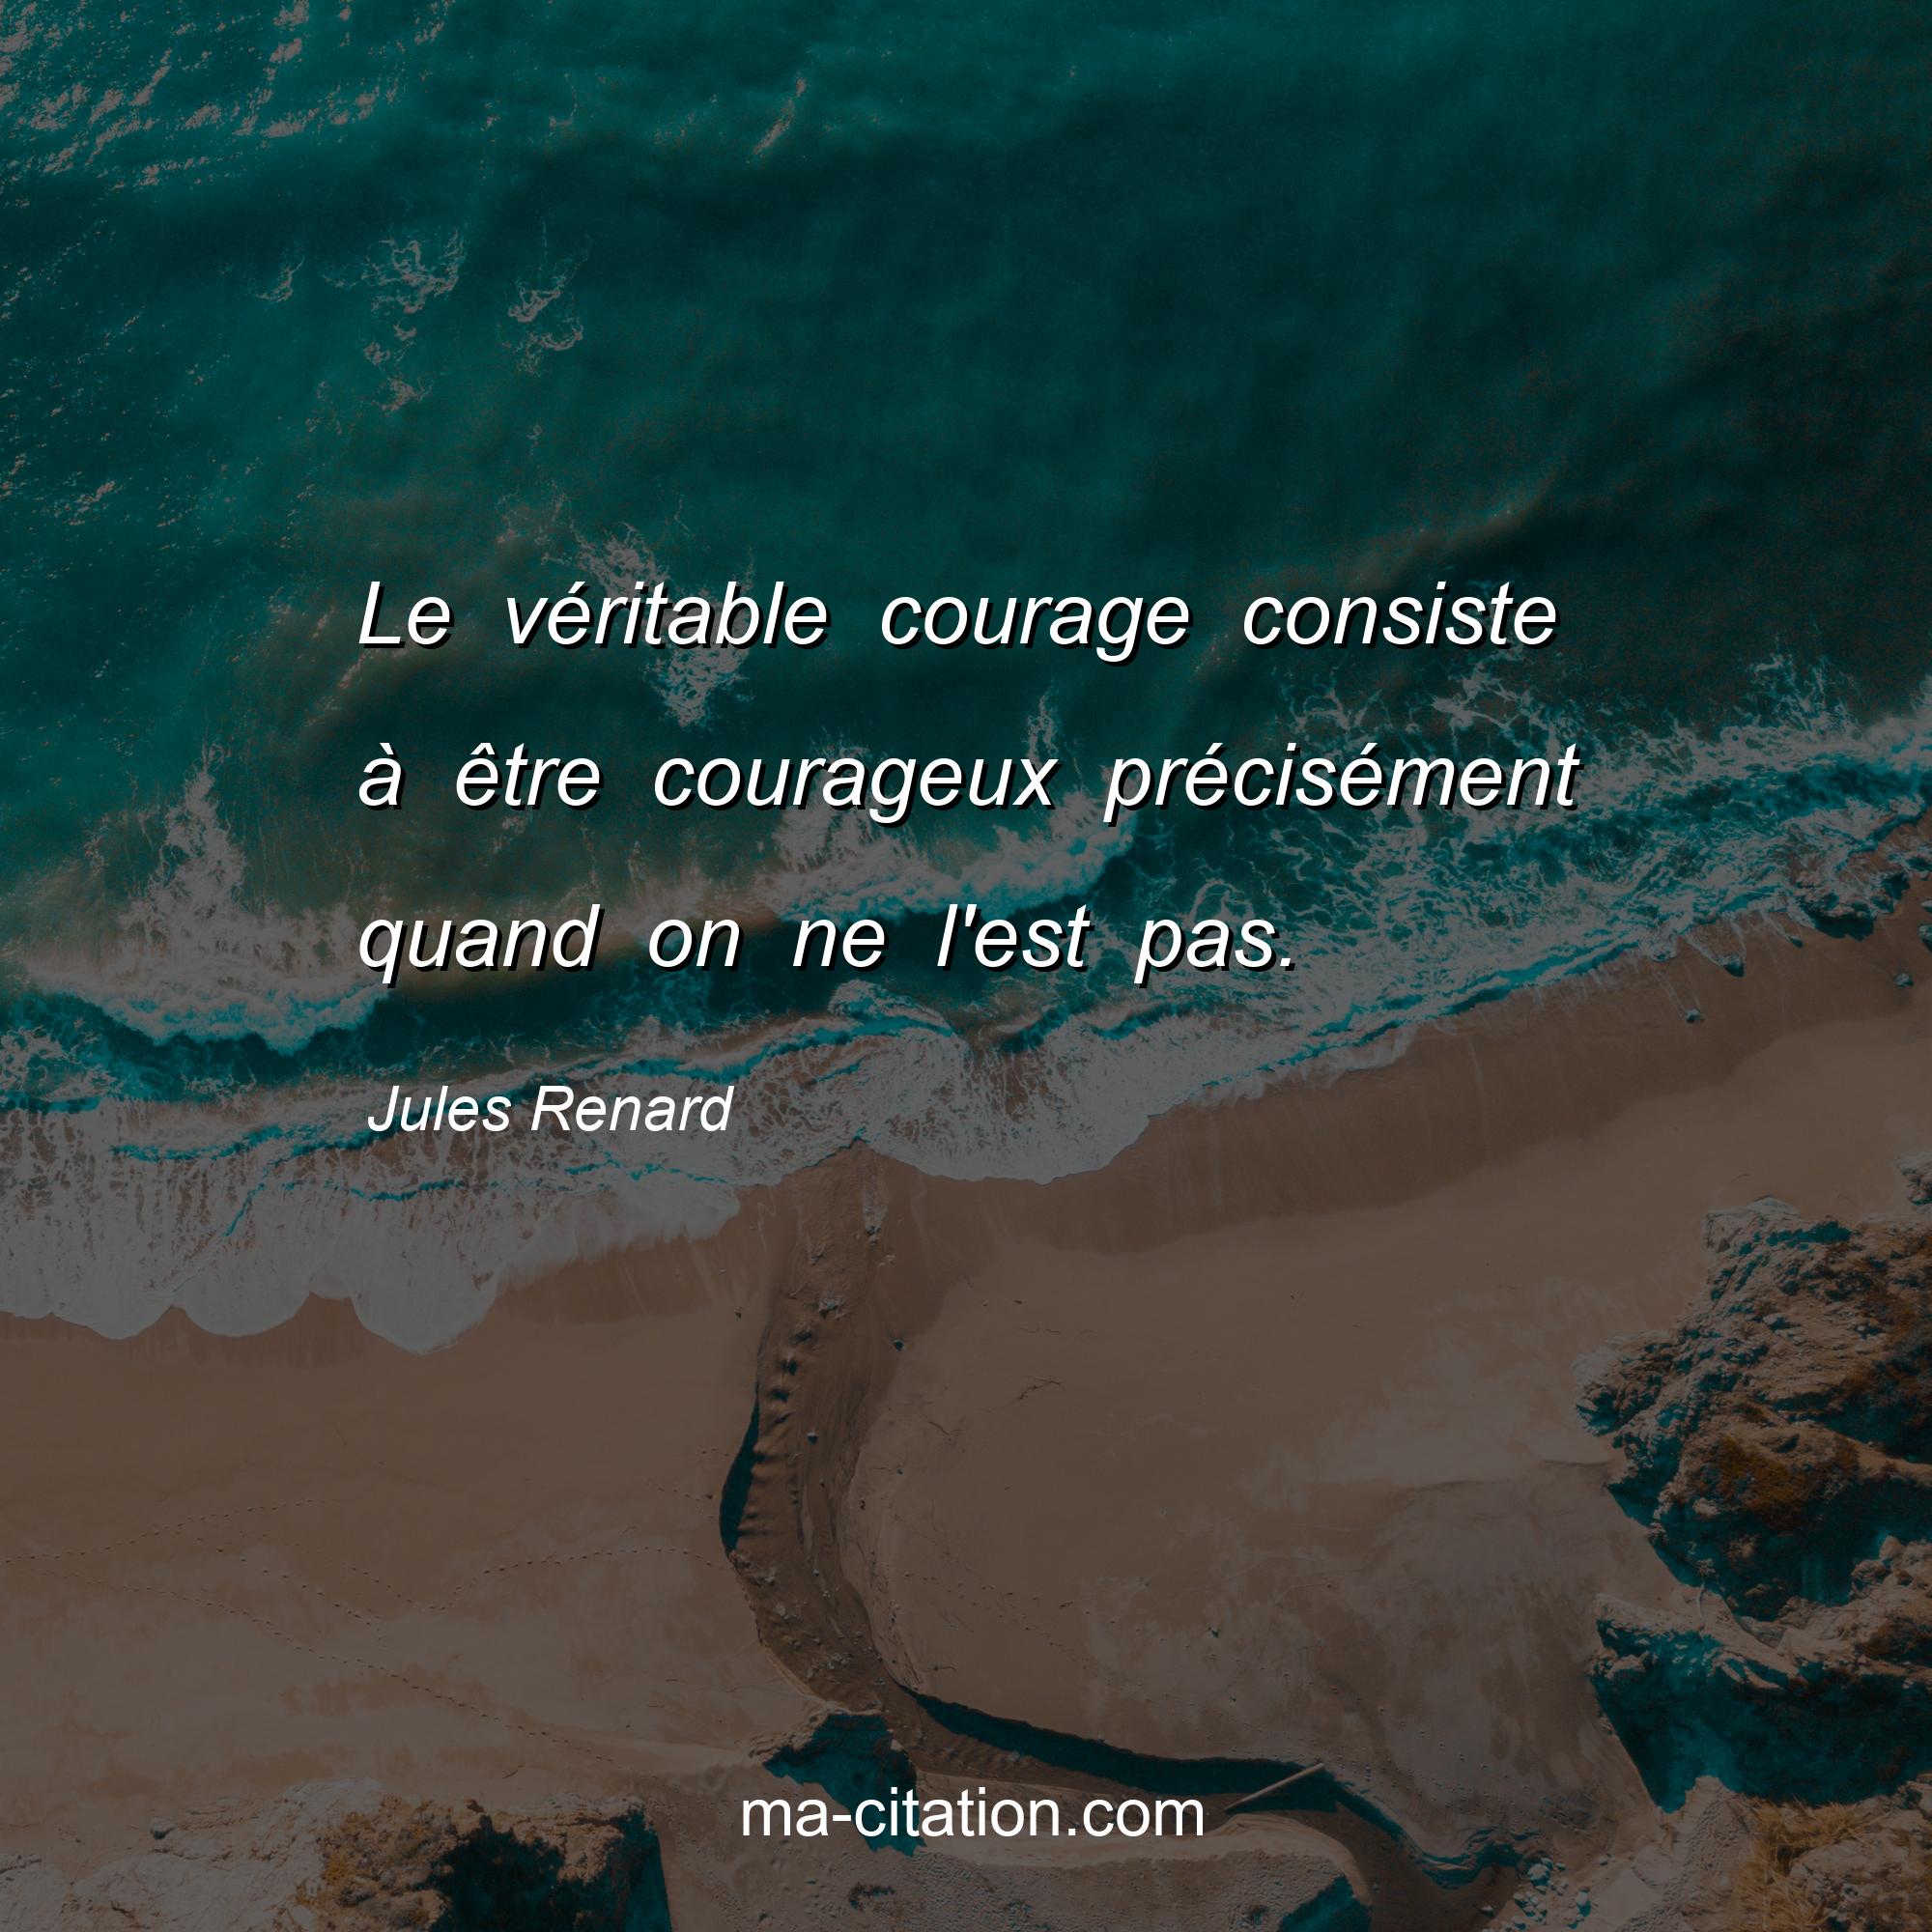 Jules Renard : Le véritable courage consiste à être courageux précisément quand on ne l'est pas.